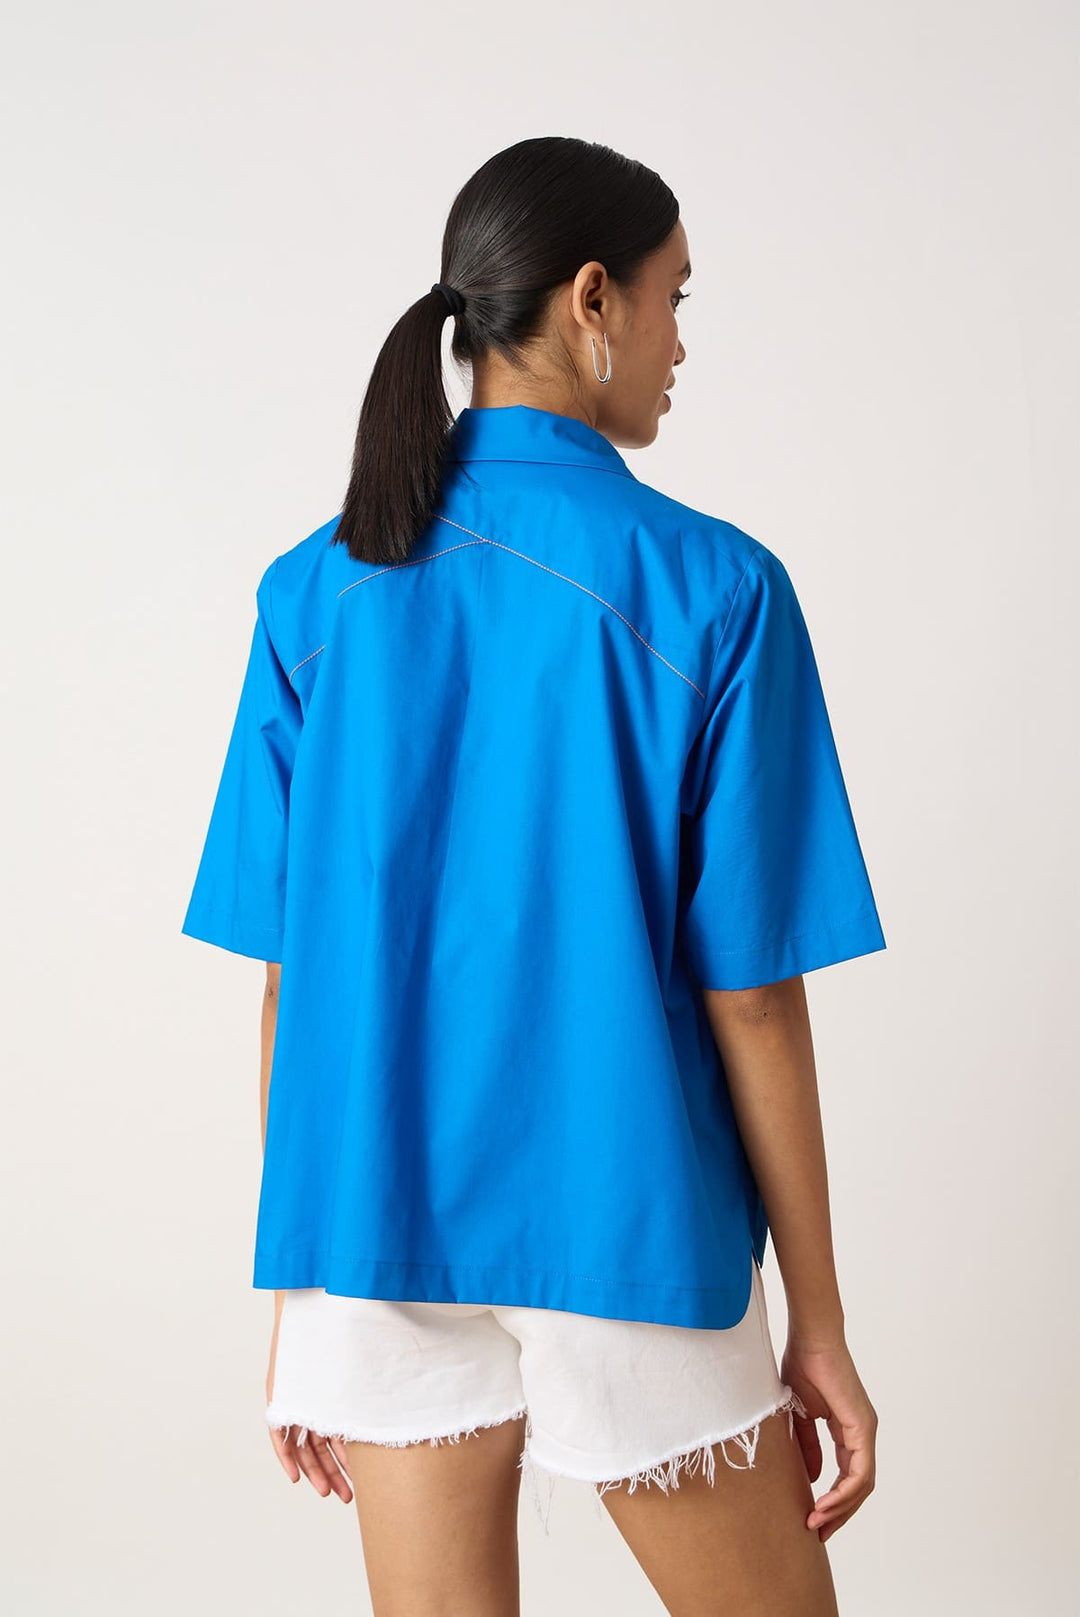 Dawson Shirt A sporty zip front shirt with Zipper detail